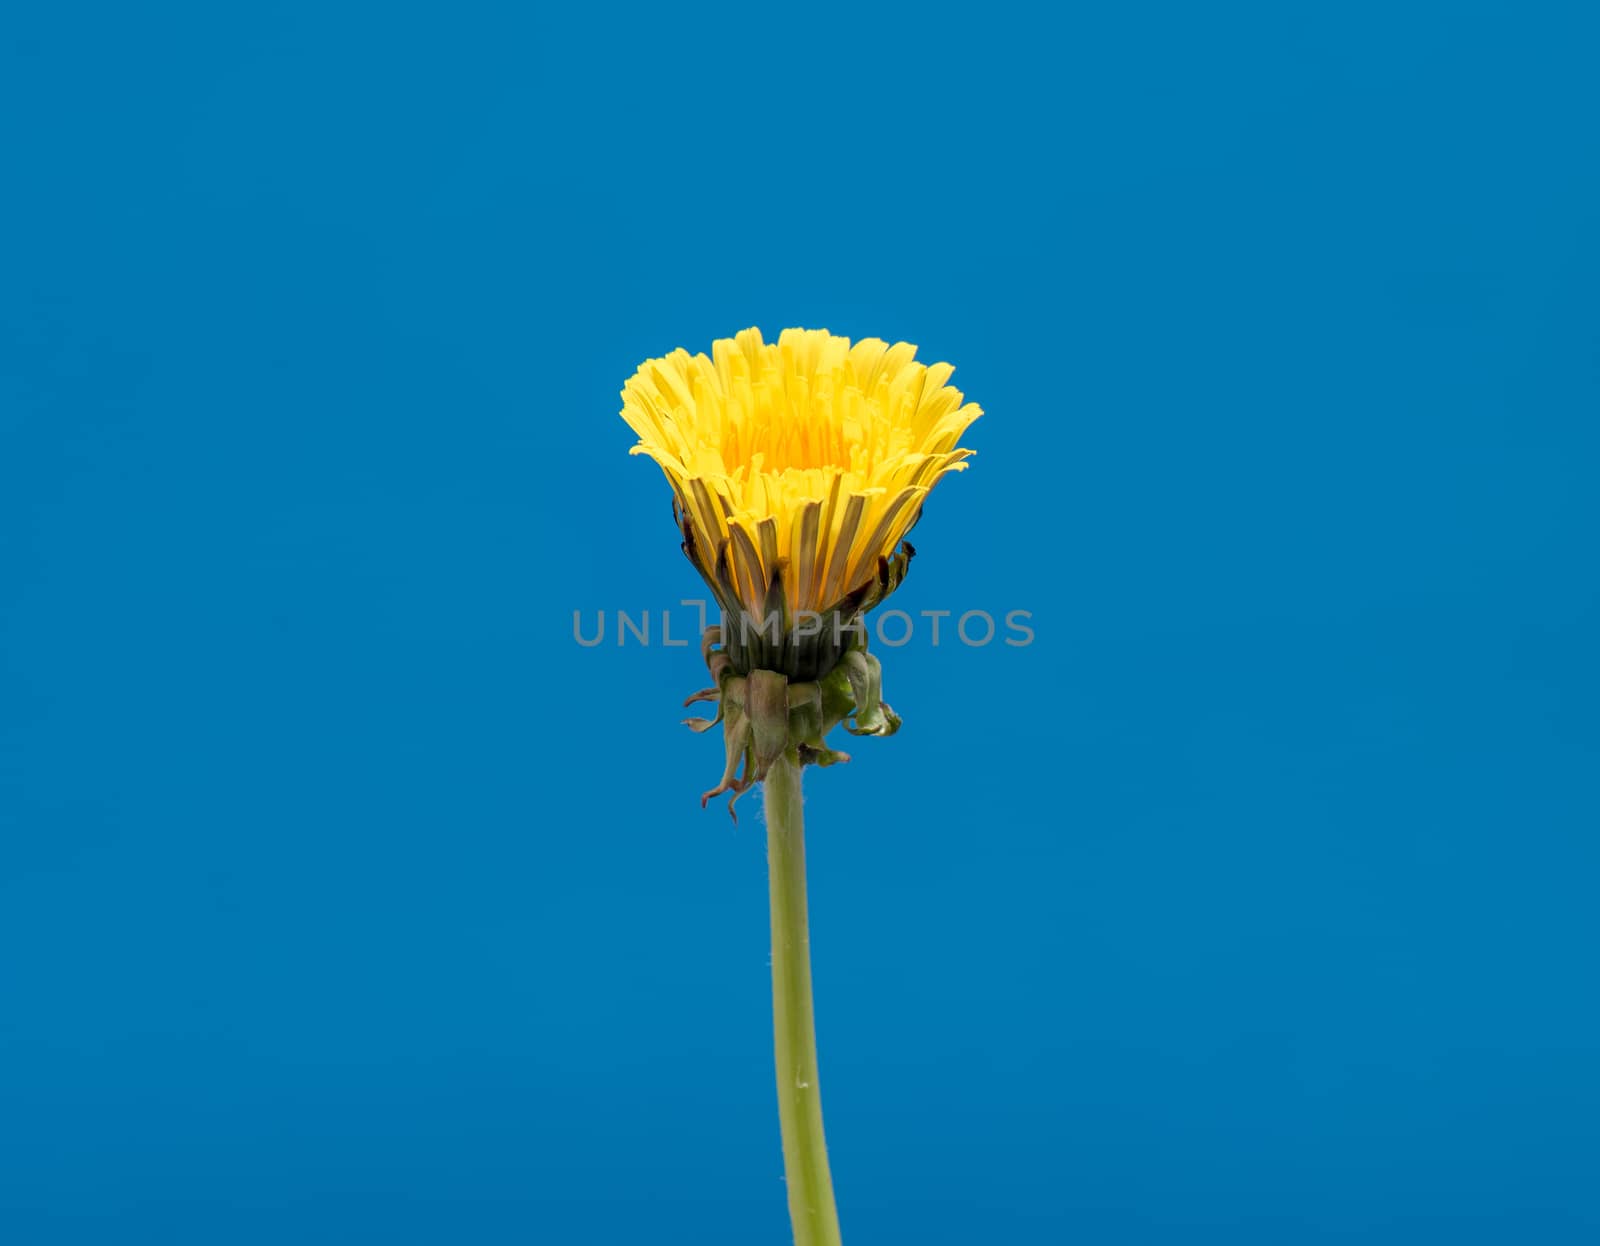 Dandelion Flower open. Yellow Flower head of dandelion disclosed. Macro shot on blue background. Spring scene in studio.